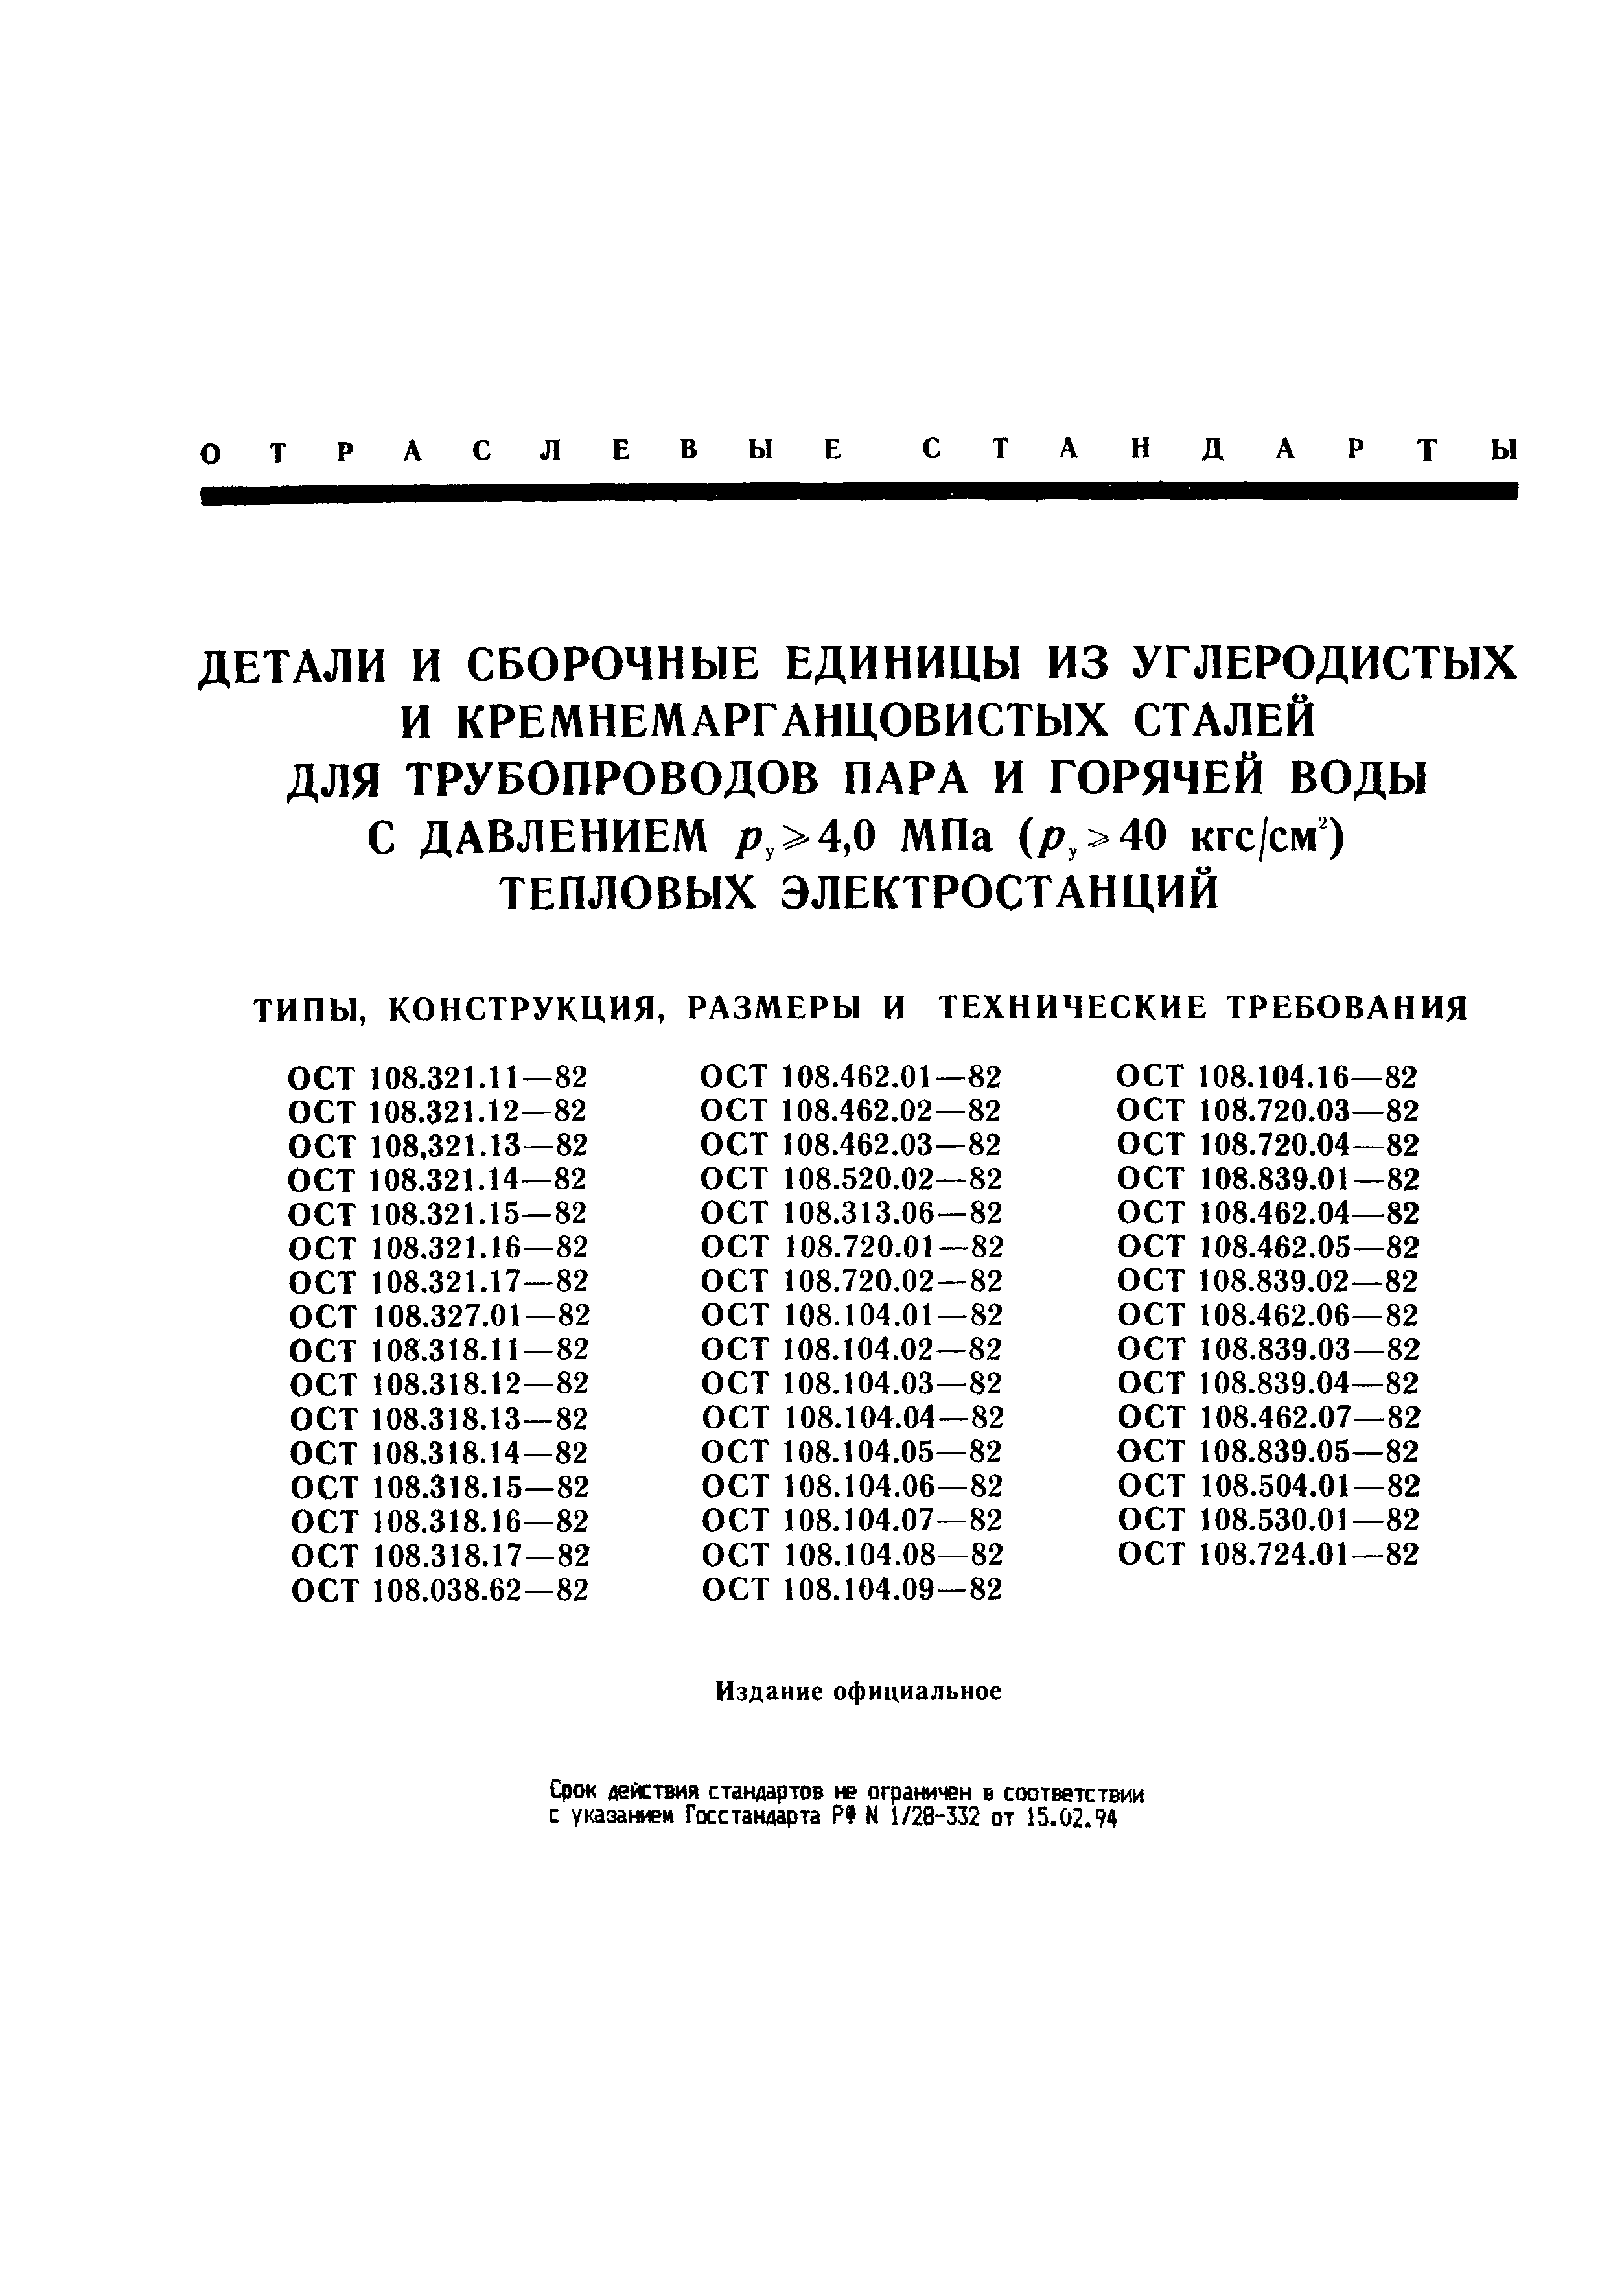 ОСТ 108.318.17-82